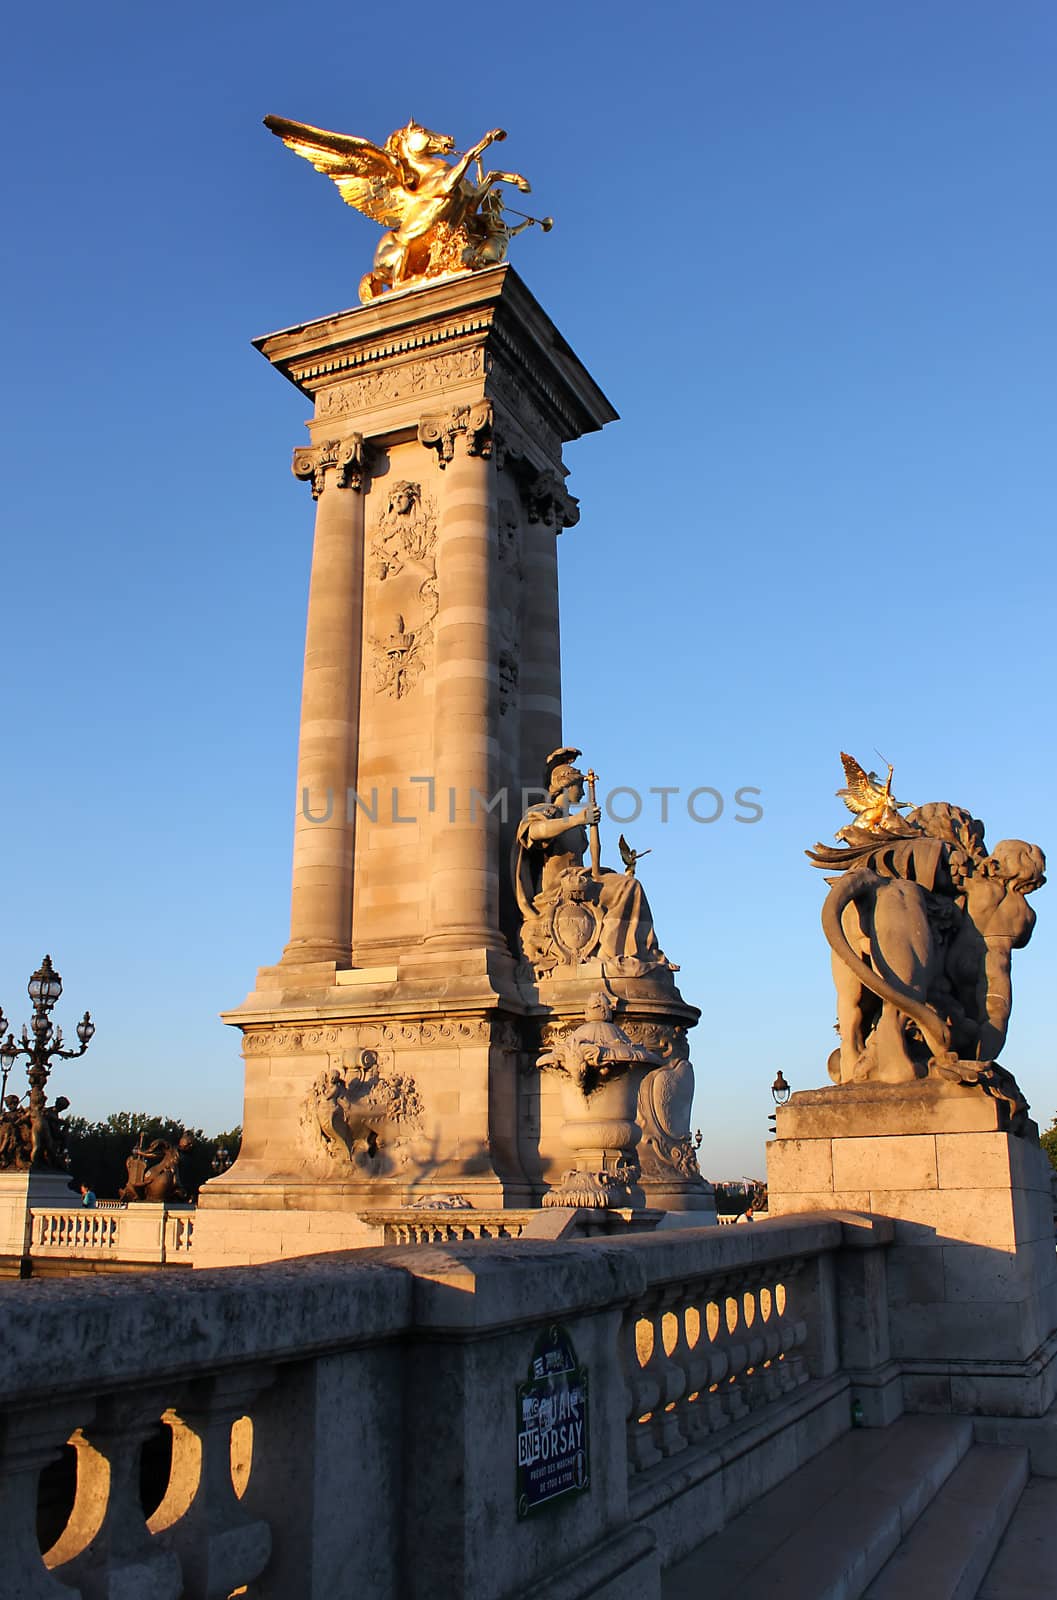 Alexander III Bridge in Paris by sateda